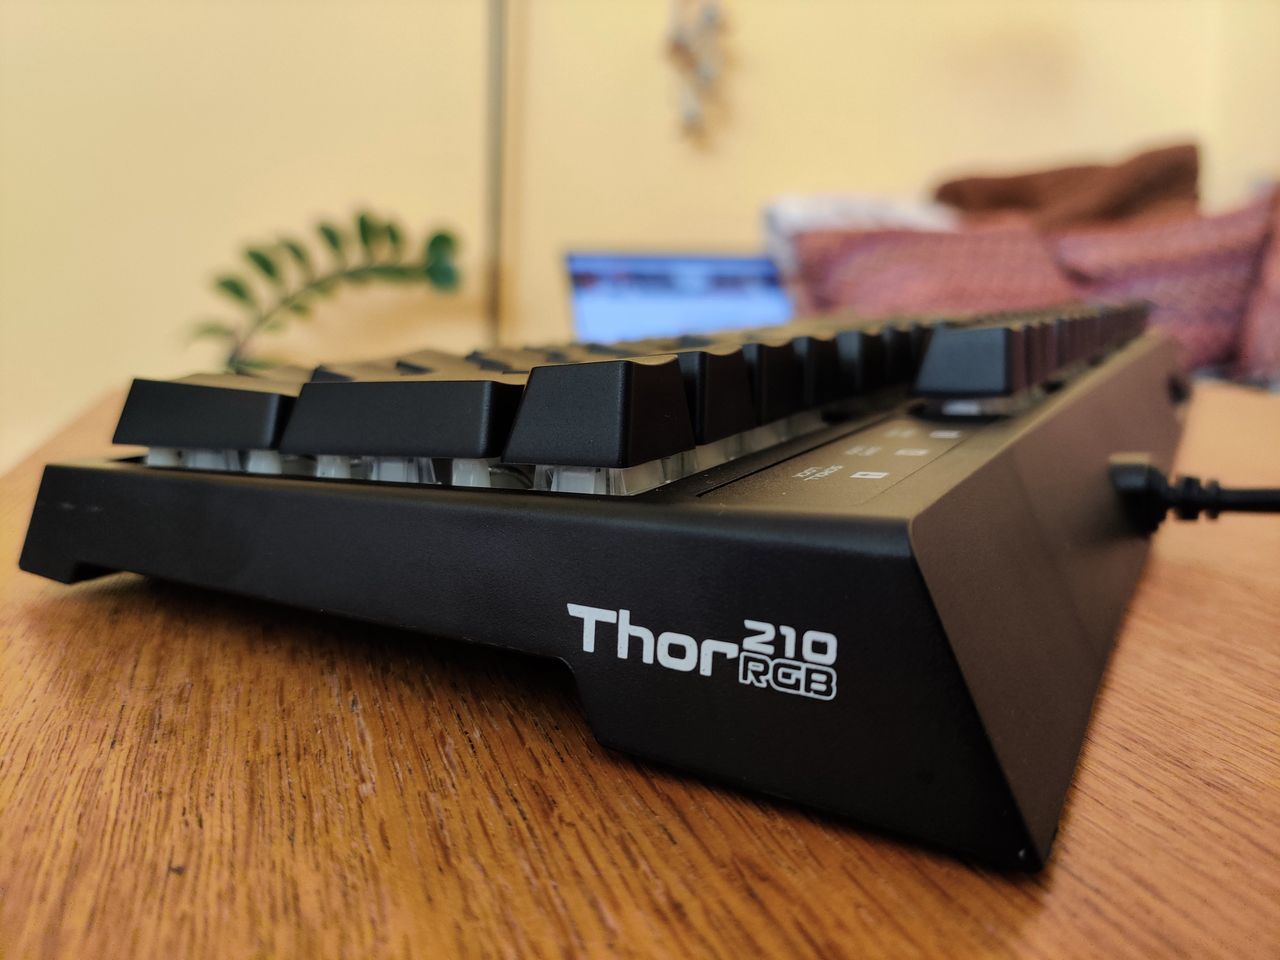 Genesis Thor 210 RGB - hybrydowa klawiatura mechaniczna z podświetleniem RGB